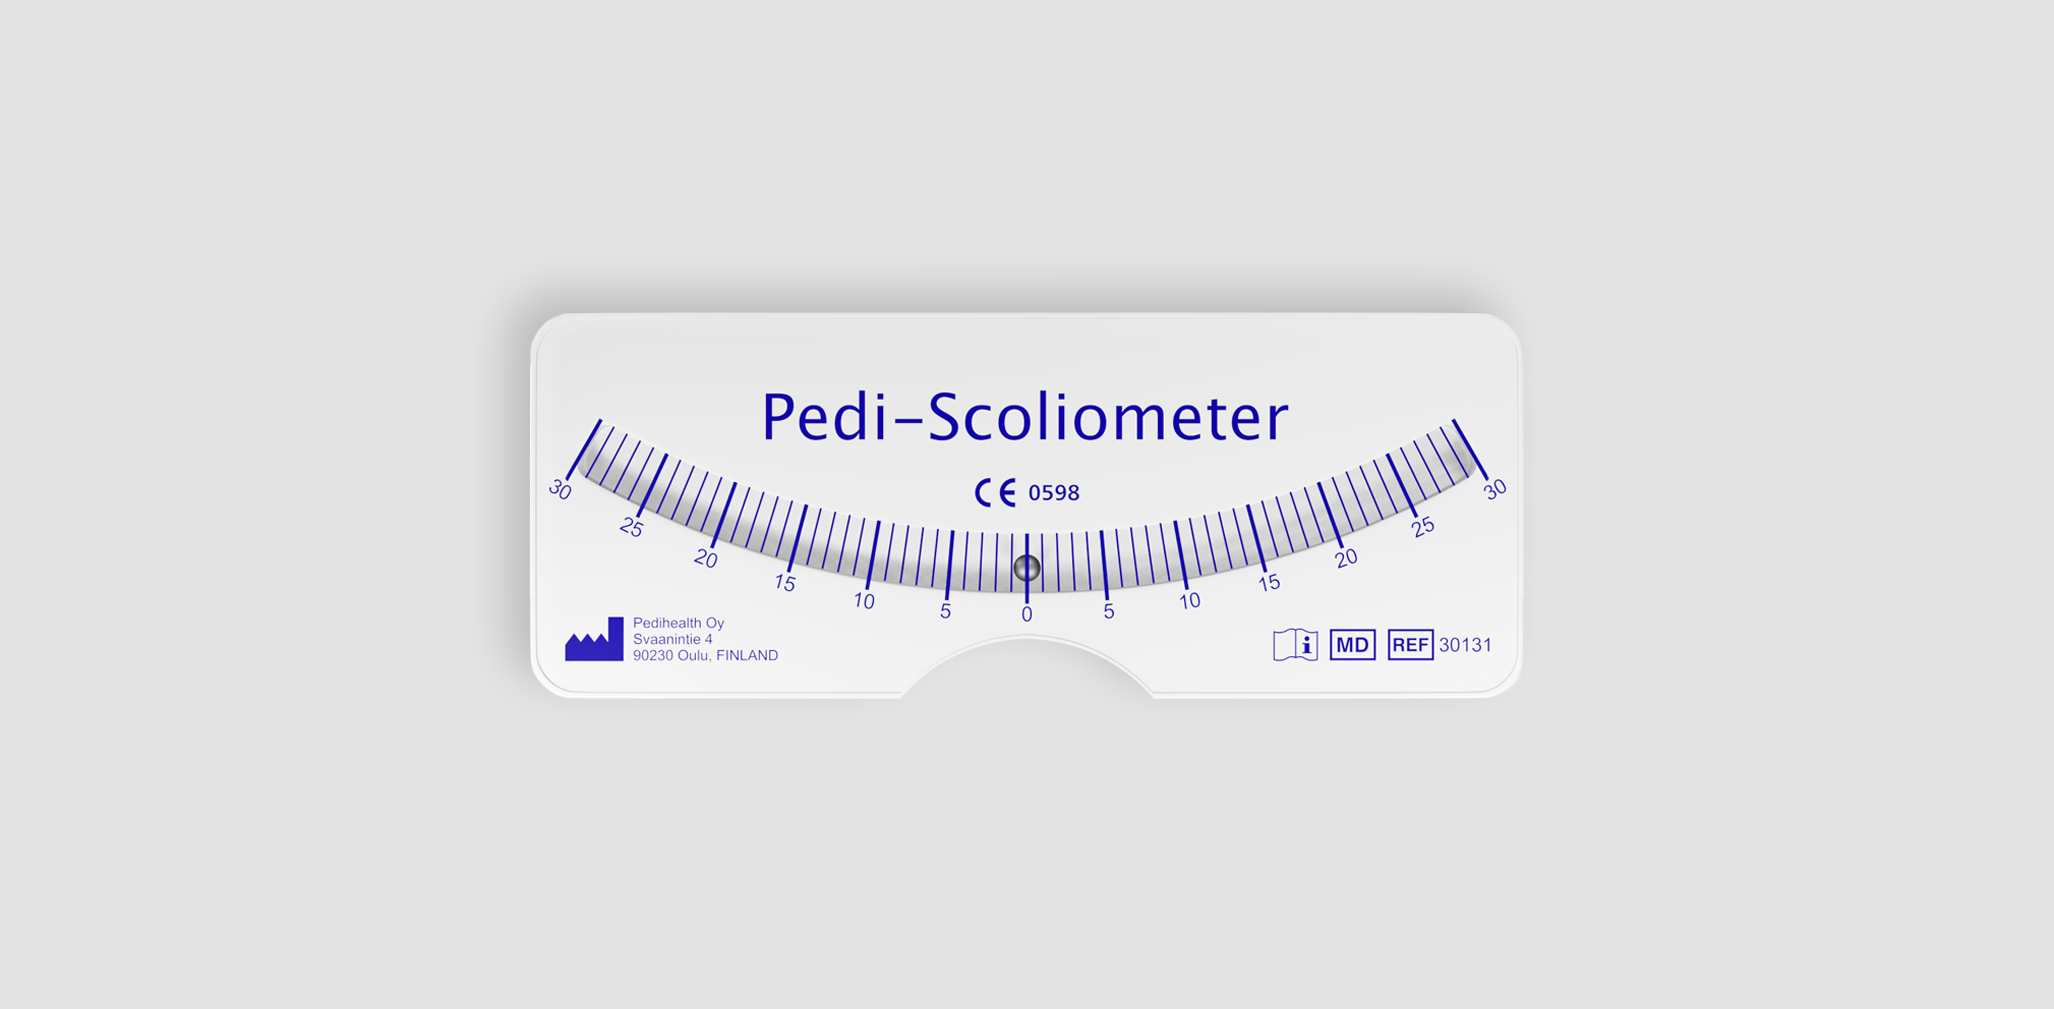 Pedi-scoliometer